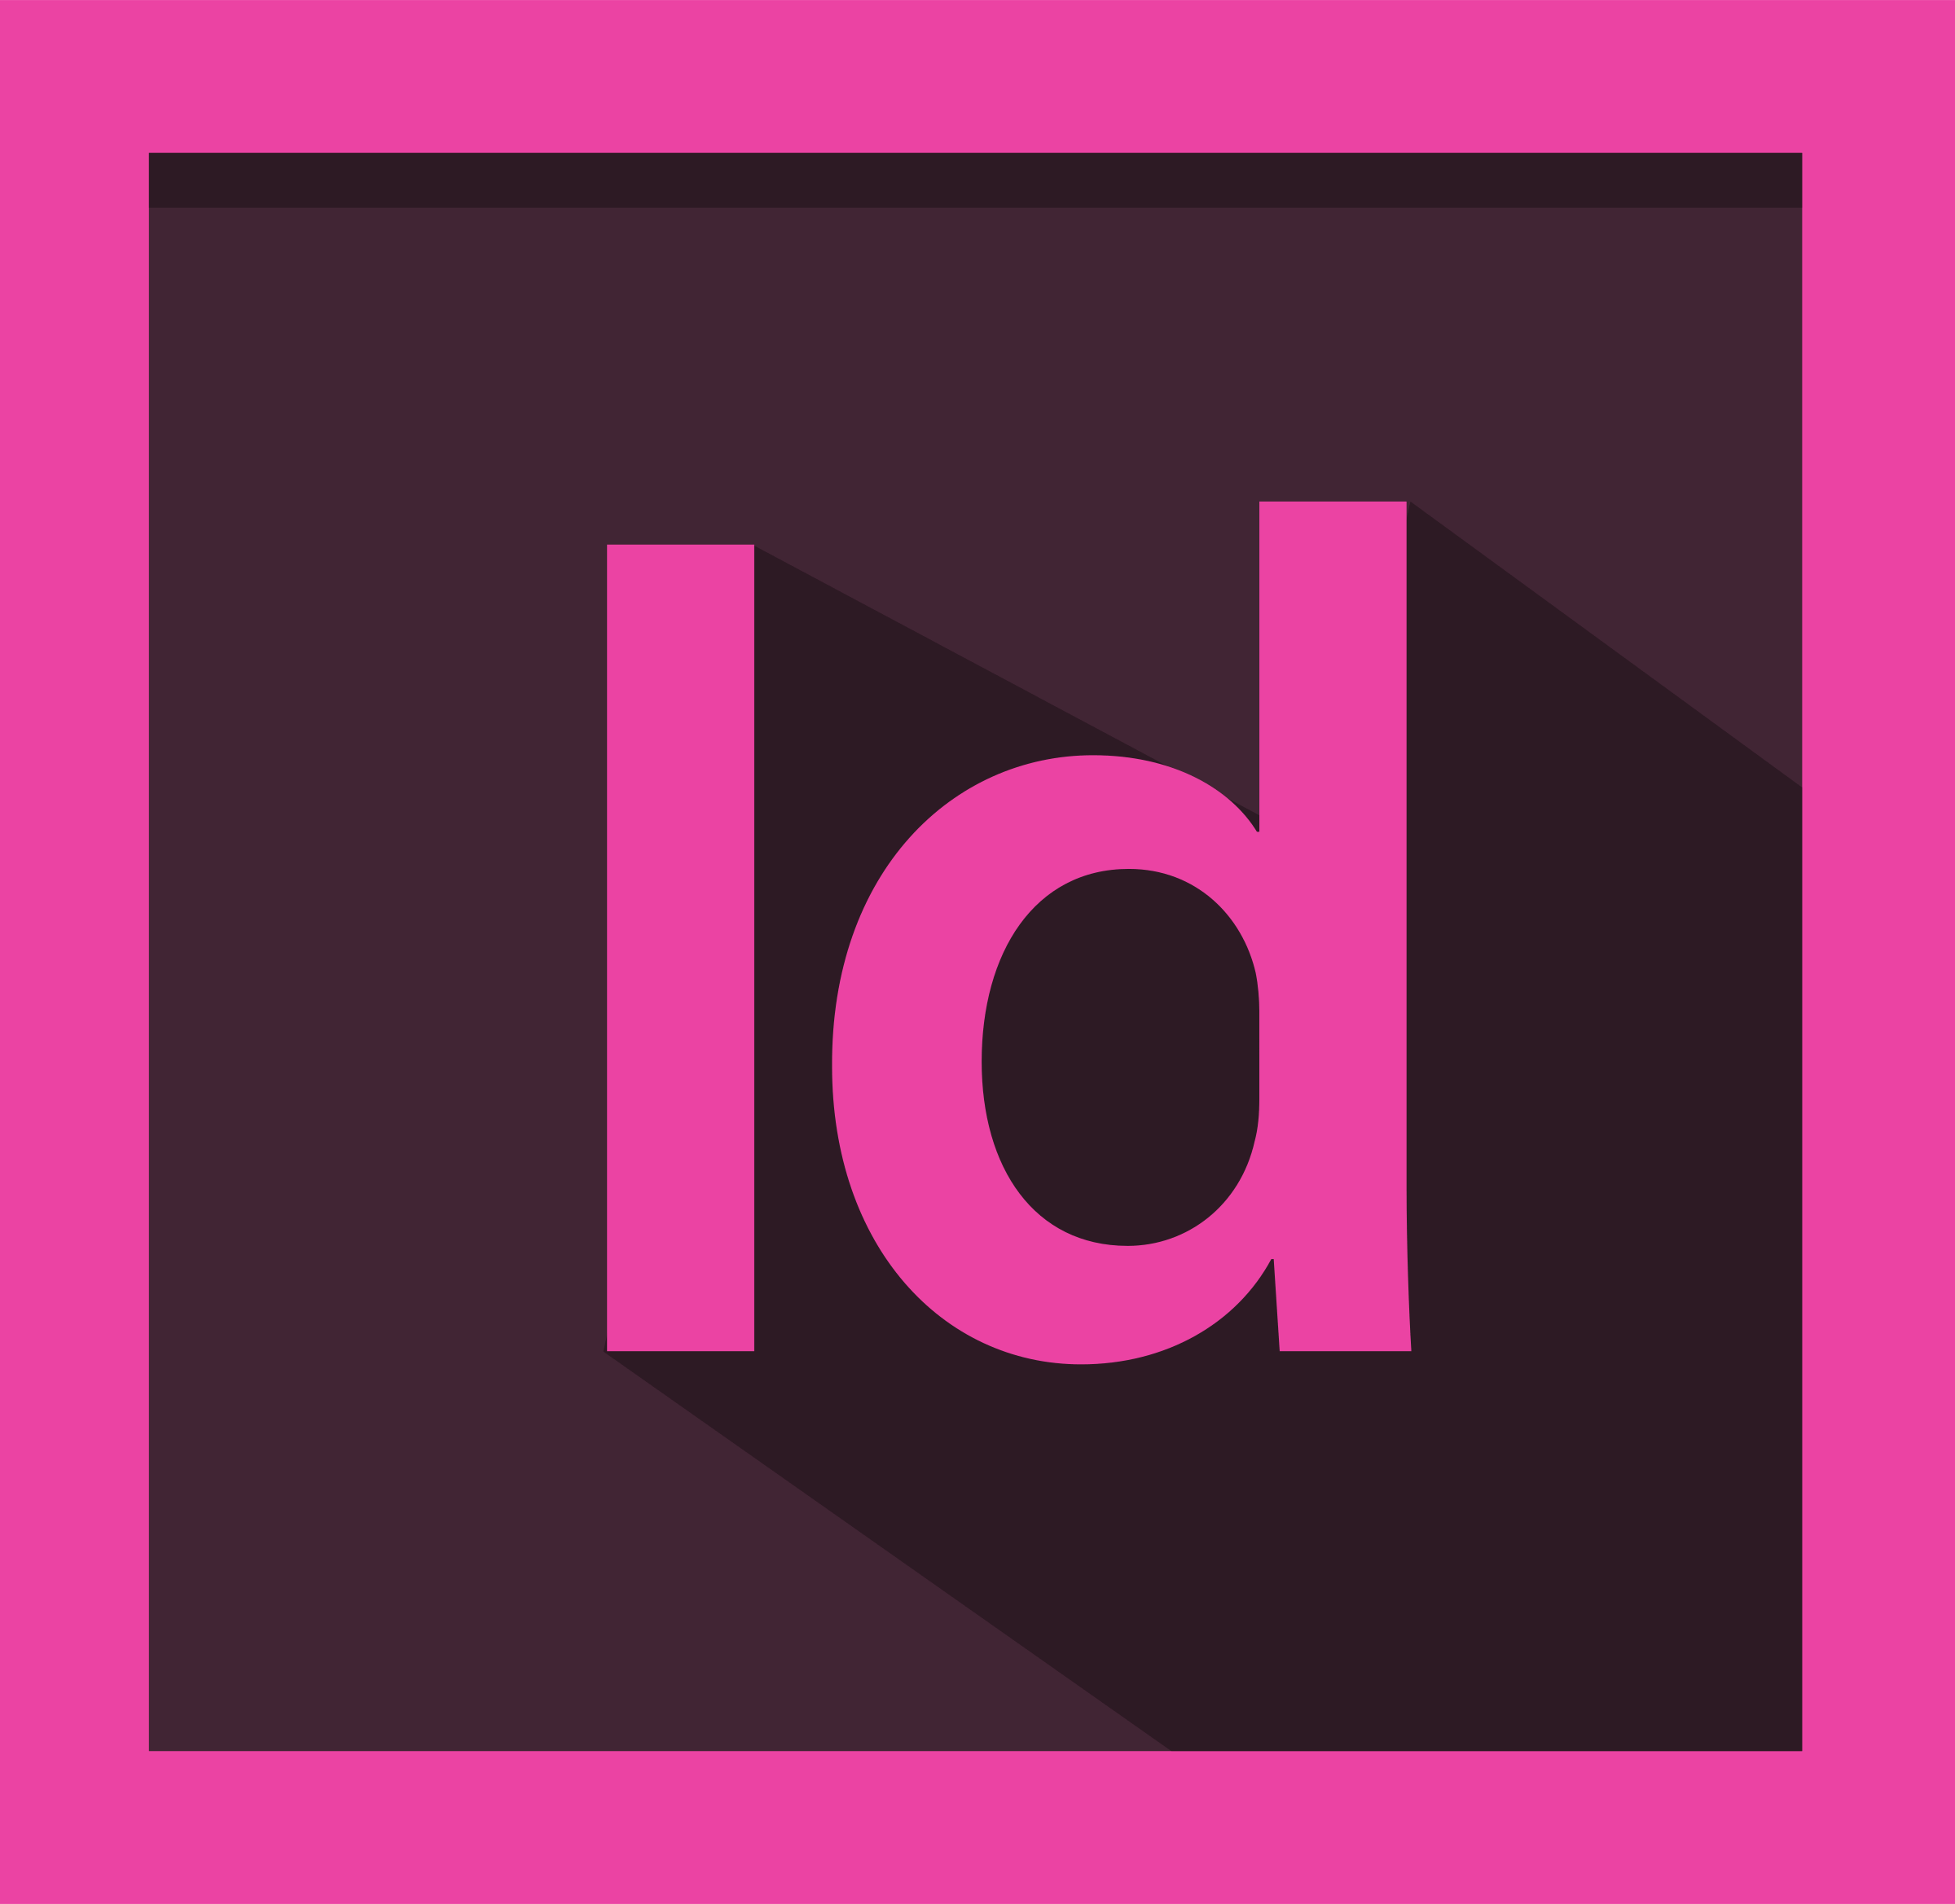 Adobe Logo - Adobe InDesign CS6 Logo PNG Transparent & SVG Vector